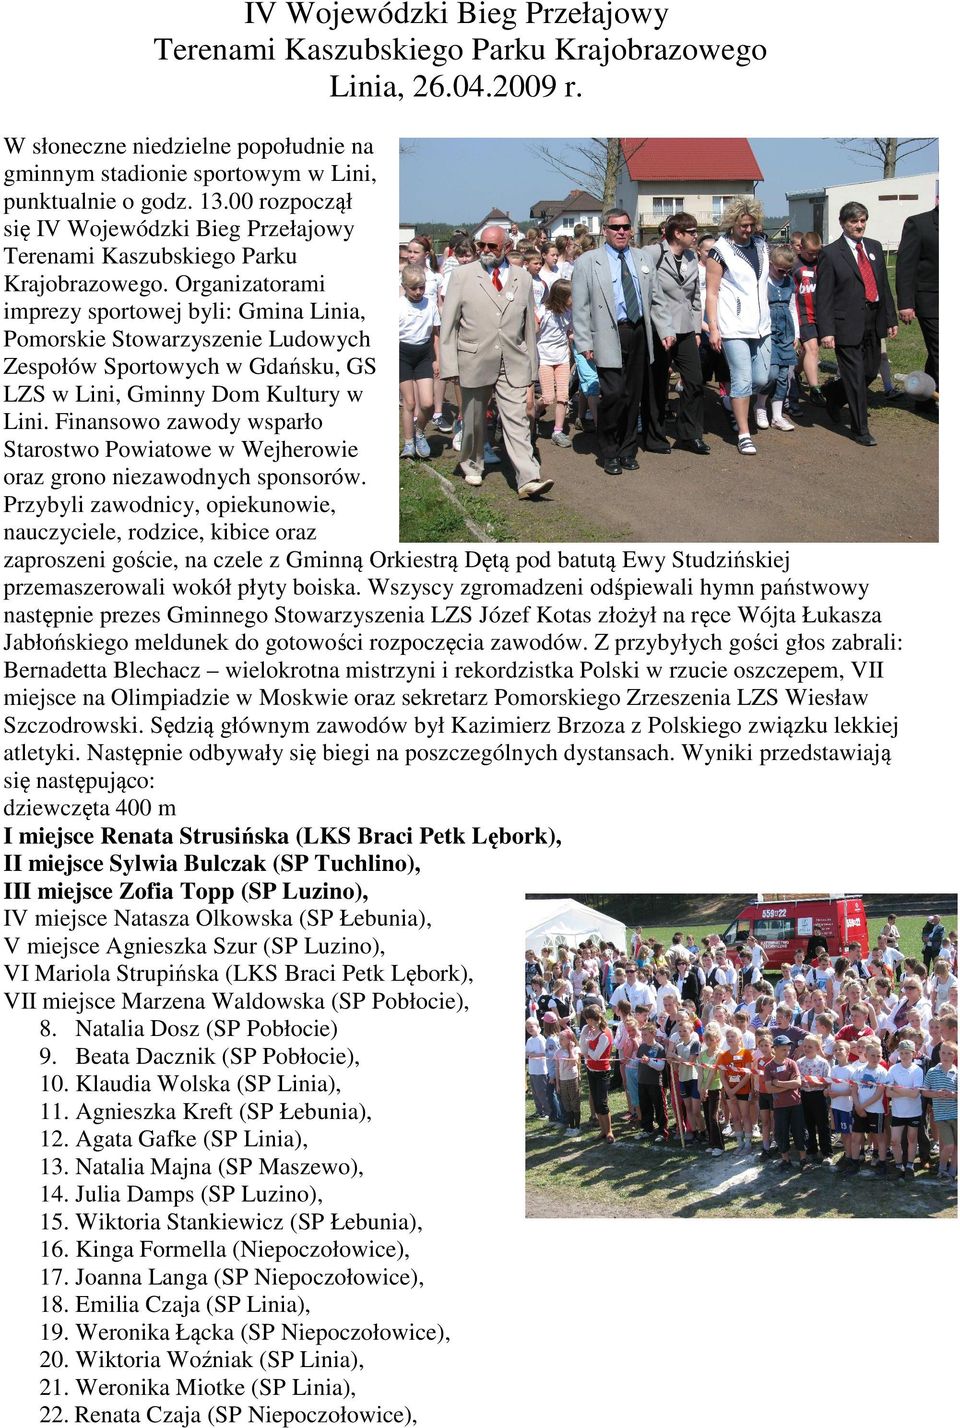 Organizatorami imprezy sportowej byli: Gmina Linia, Pomorskie Stowarzyszenie Ludowych Zespołów Sportowych w Gdańsku, GS LZS w Lini, Gminny Dom Kultury w Lini.